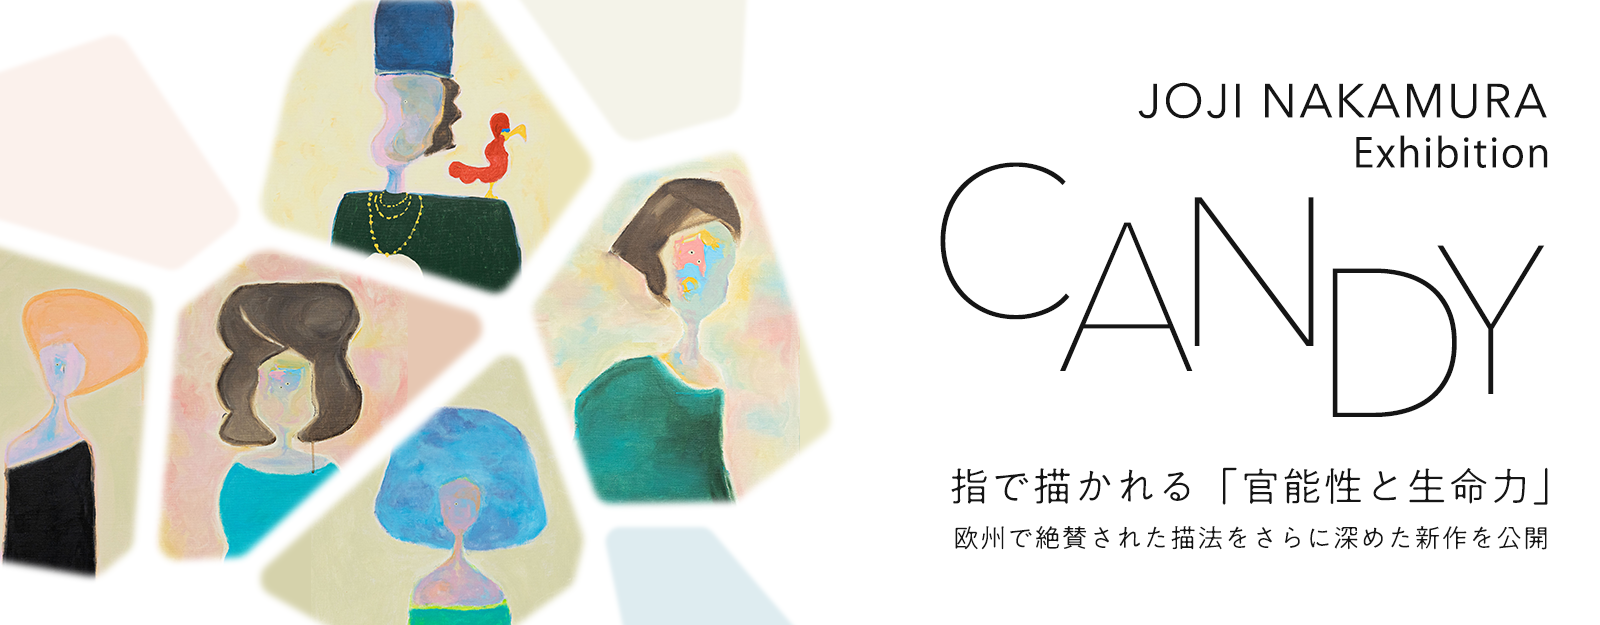 中村穣二 個展「CANDY」